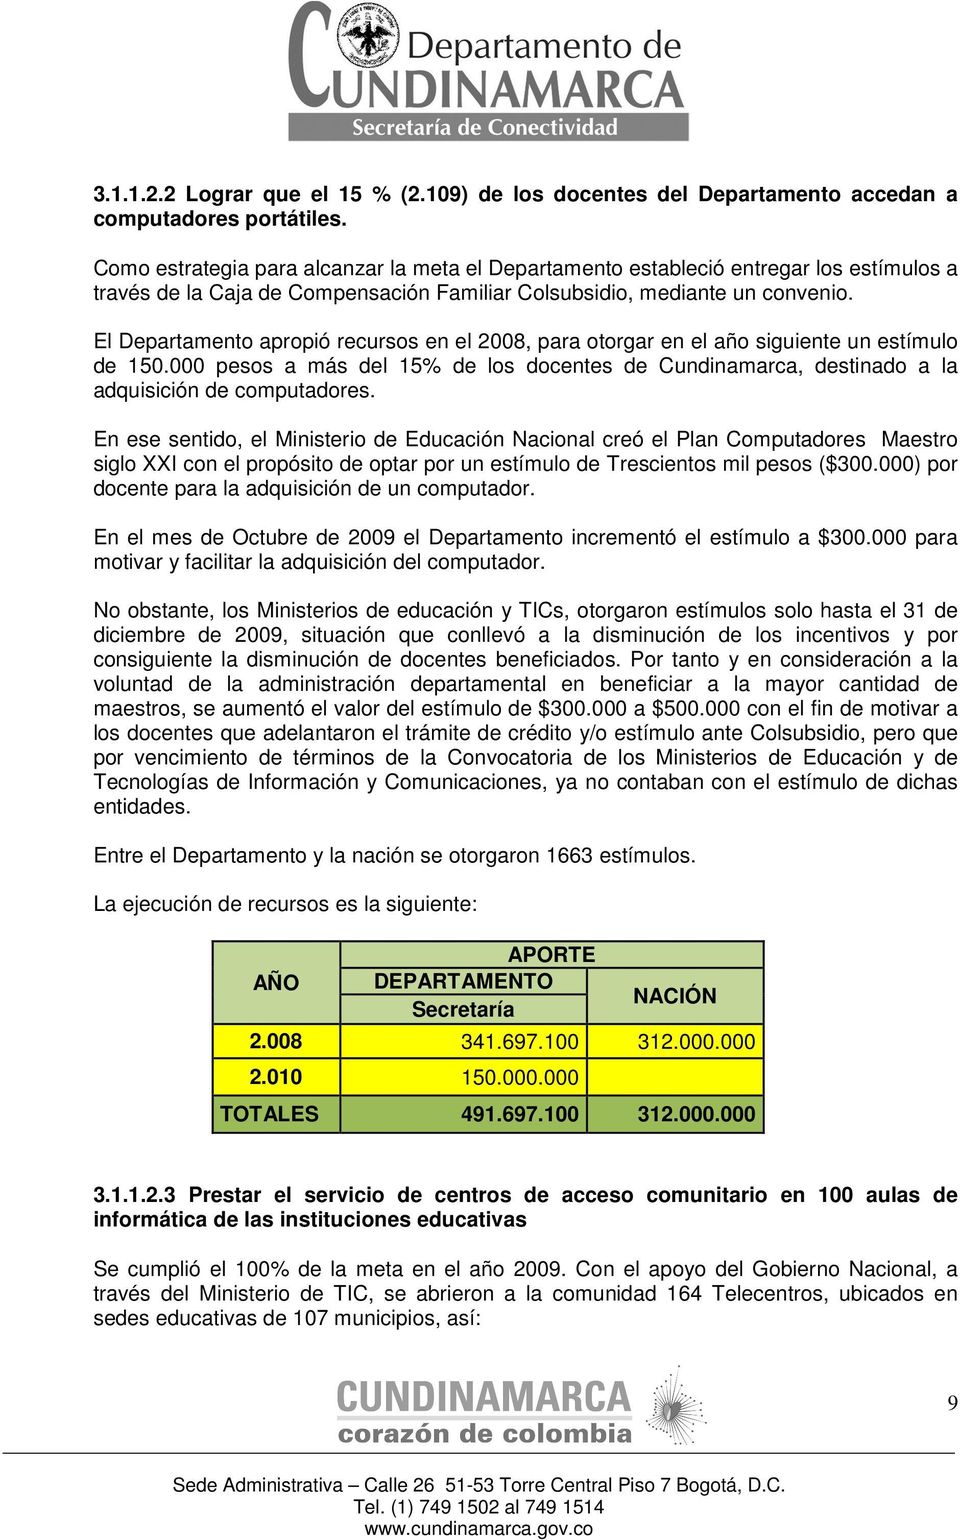 El Departamento apropió recursos en el 2008, para otorgar en el año siguiente un estímulo de 150.000 pesos a más del 15% de los docentes de Cundinamarca, destinado a la adquisición de computadores.